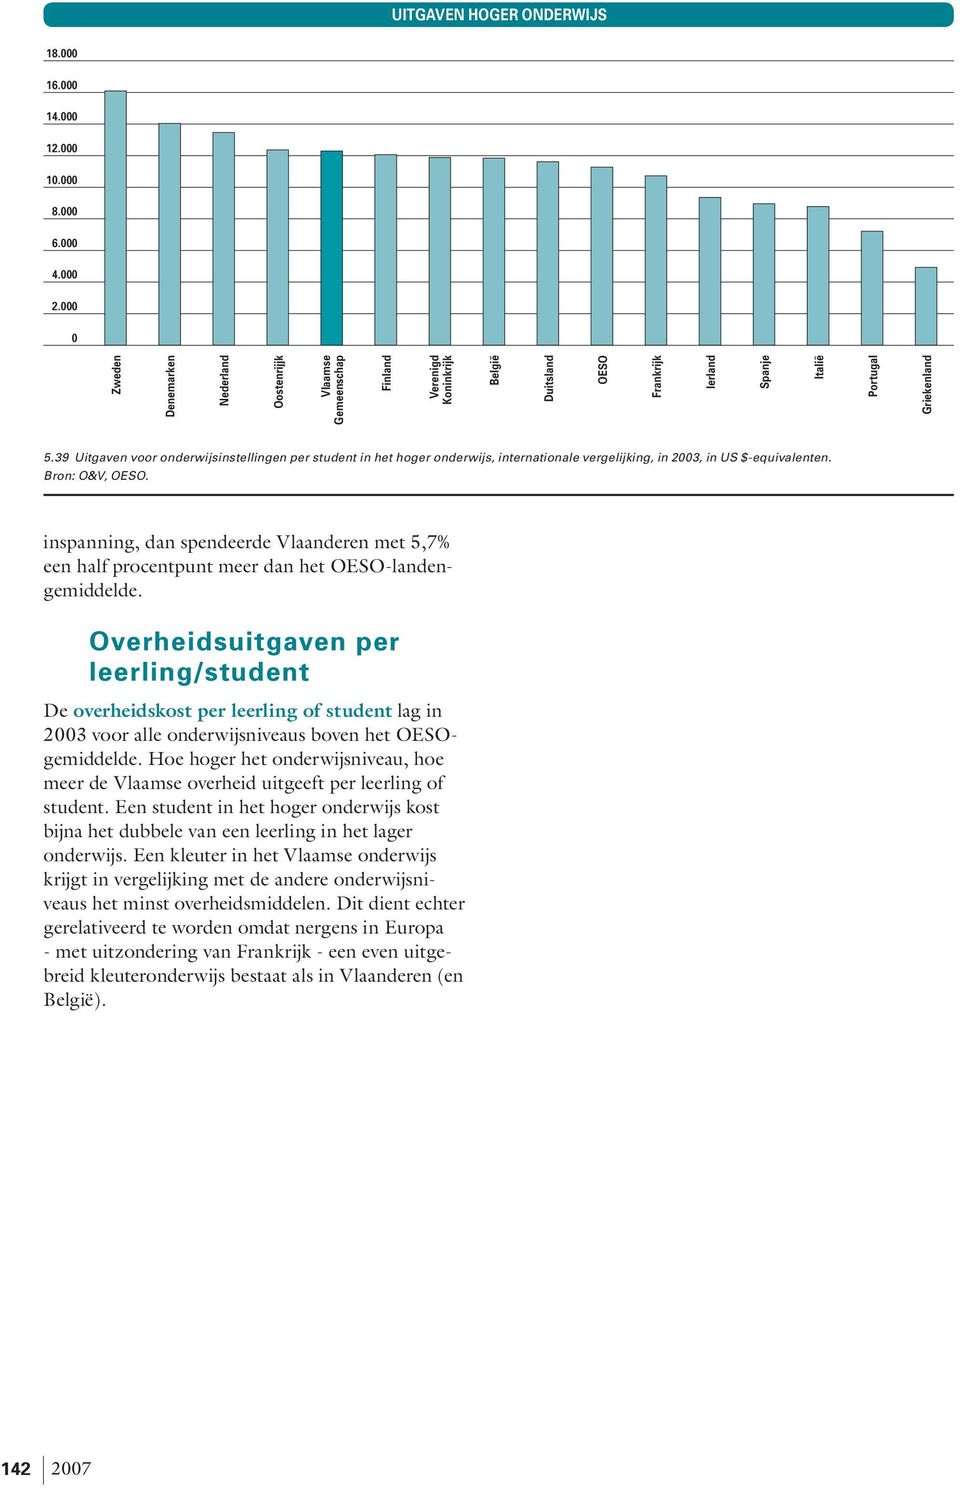 inspanning, dan spendeerde Vlaanderen met 5,7% een half procentpunt meer dan het OESO-landengemiddelde.